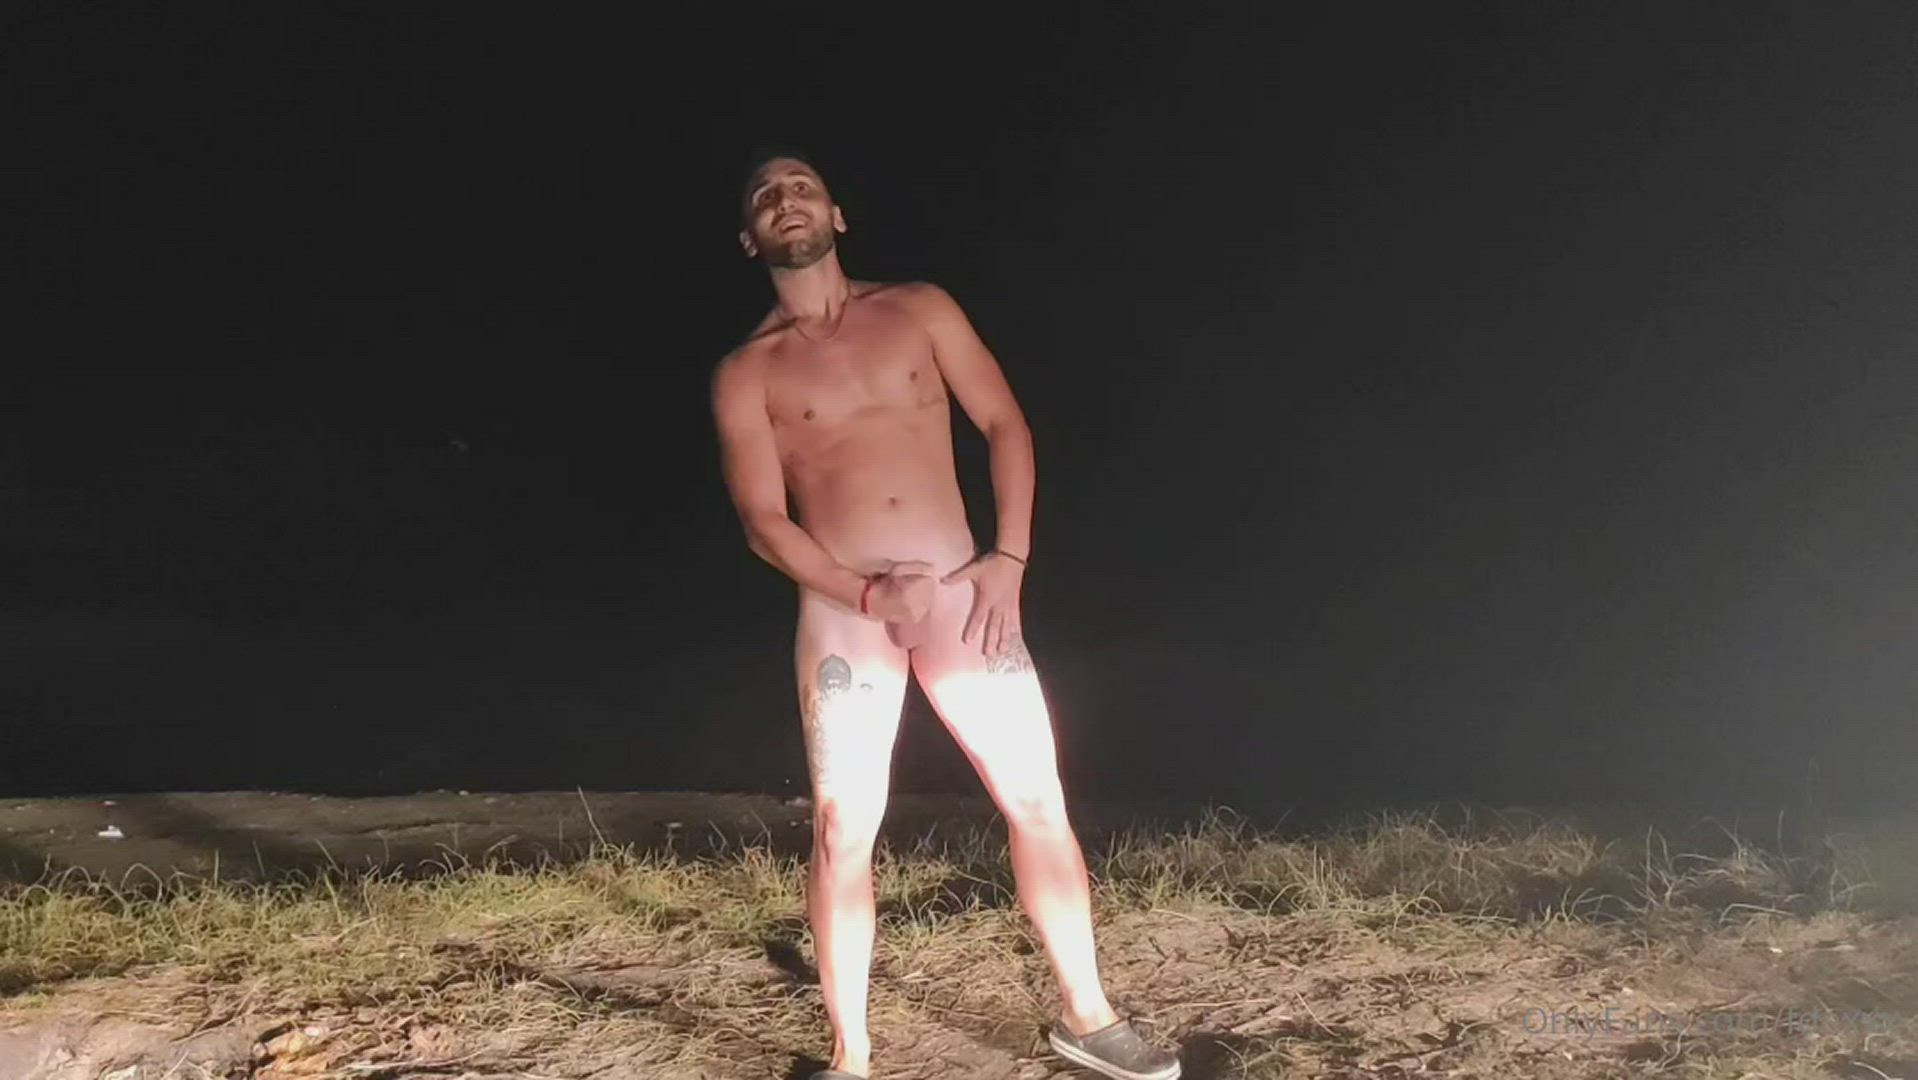 Ass porn video with onlyfans model Fdexxxonly <strong>@fdexxx</strong>